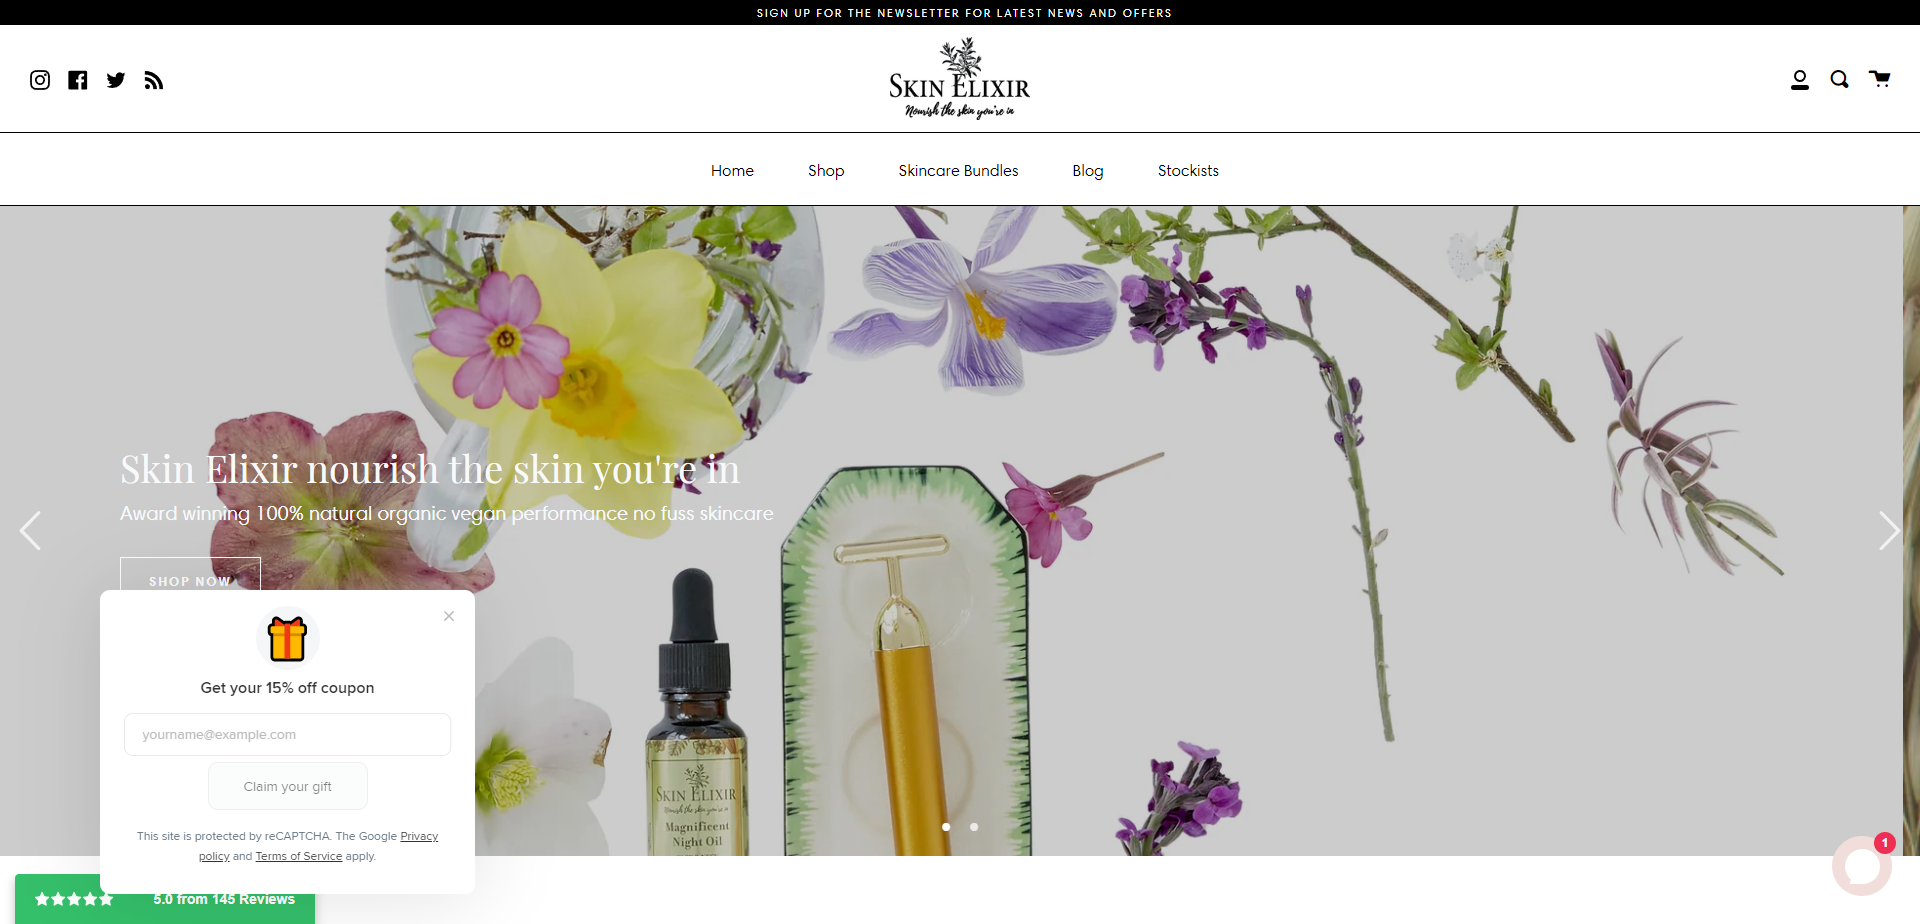 Landing Page for Skin Elixir